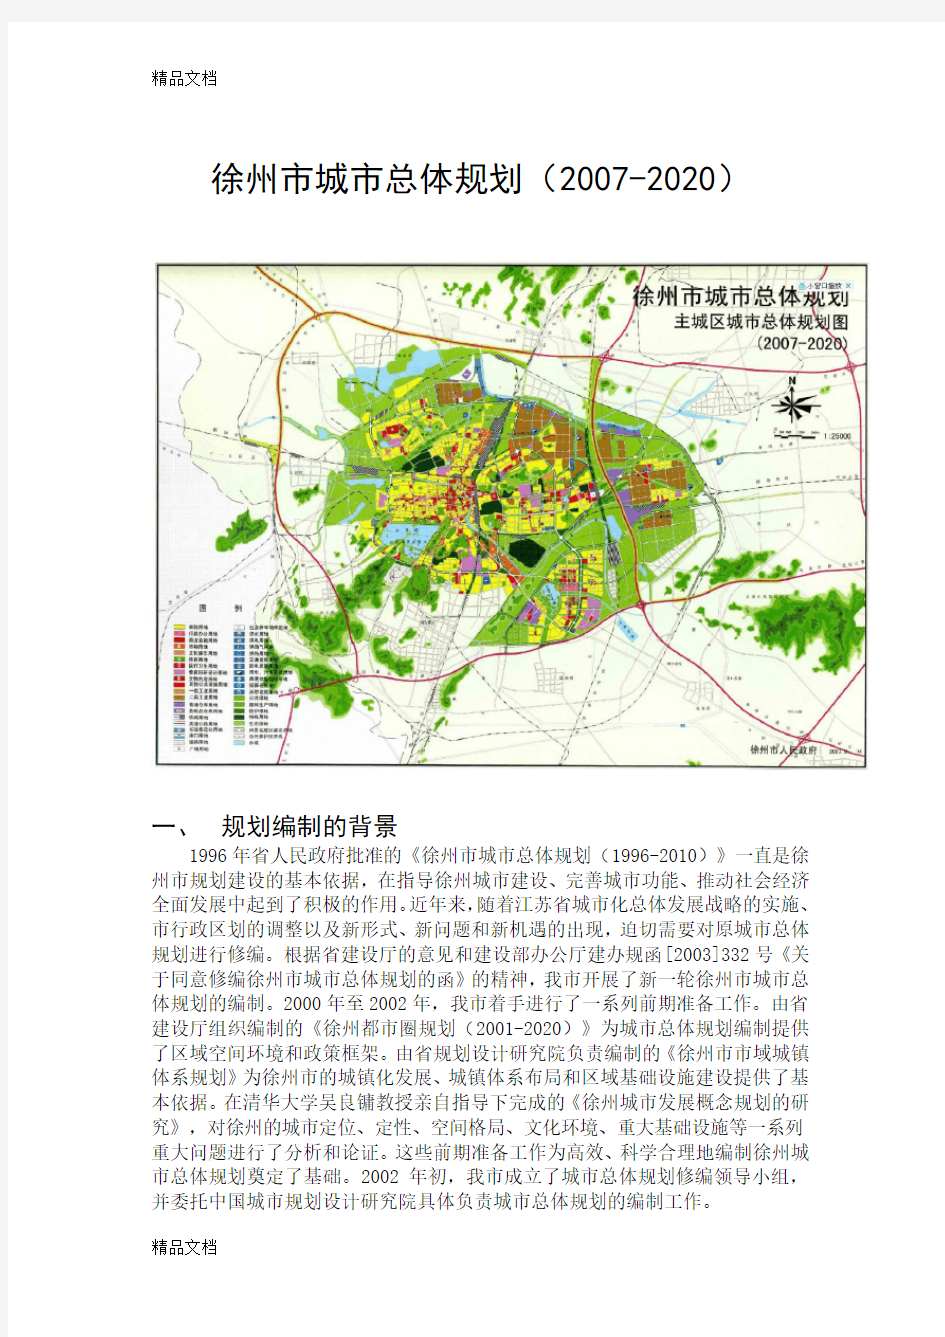 最新徐州市城市总体规划(含规划总图)资料